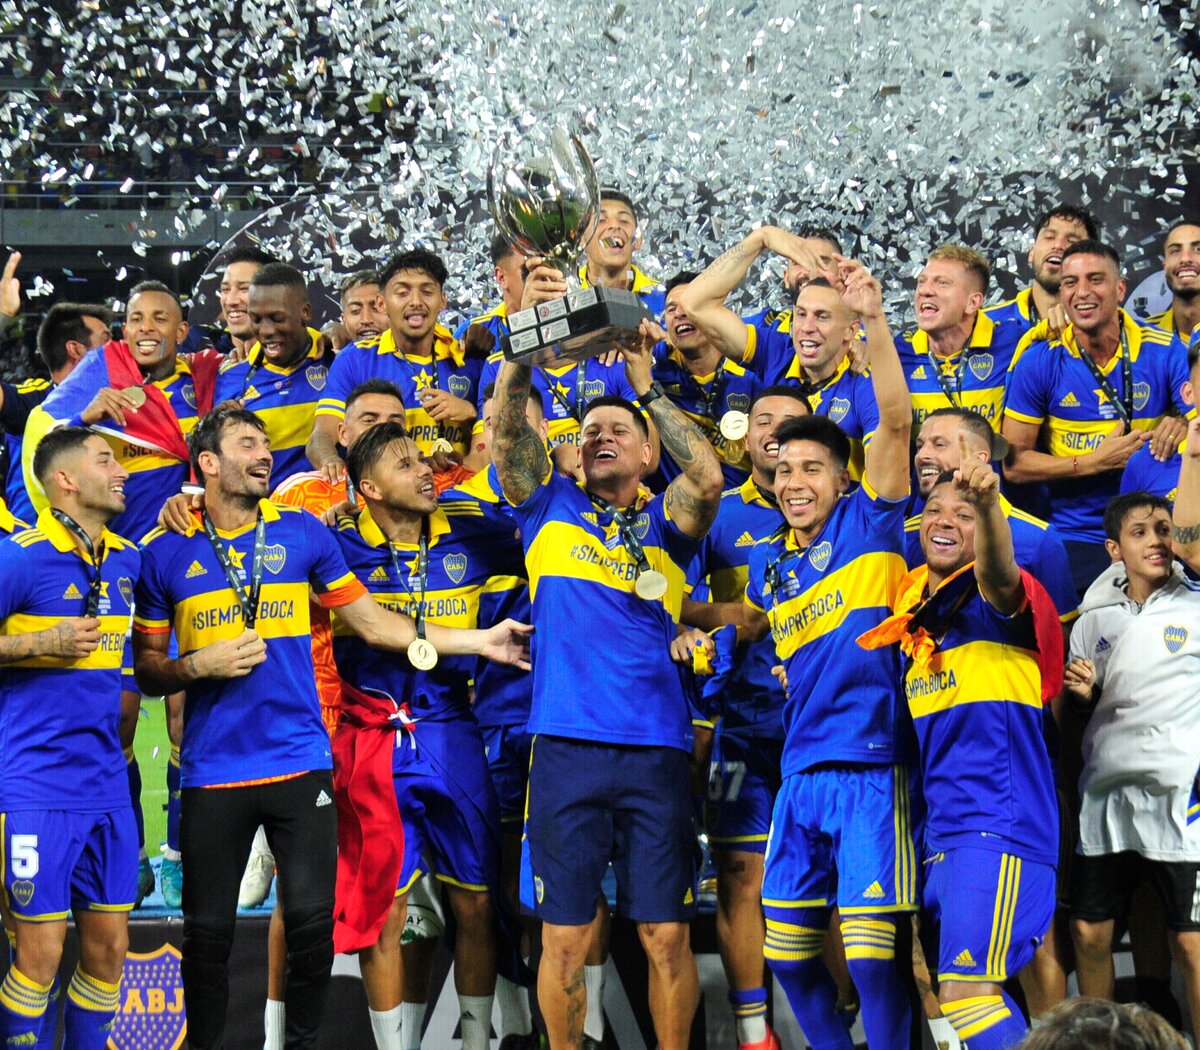 Boca se consagró campeón de la Supercopa Argentina y superó a River en  títulos nacionales | El más ganador del país | Página12